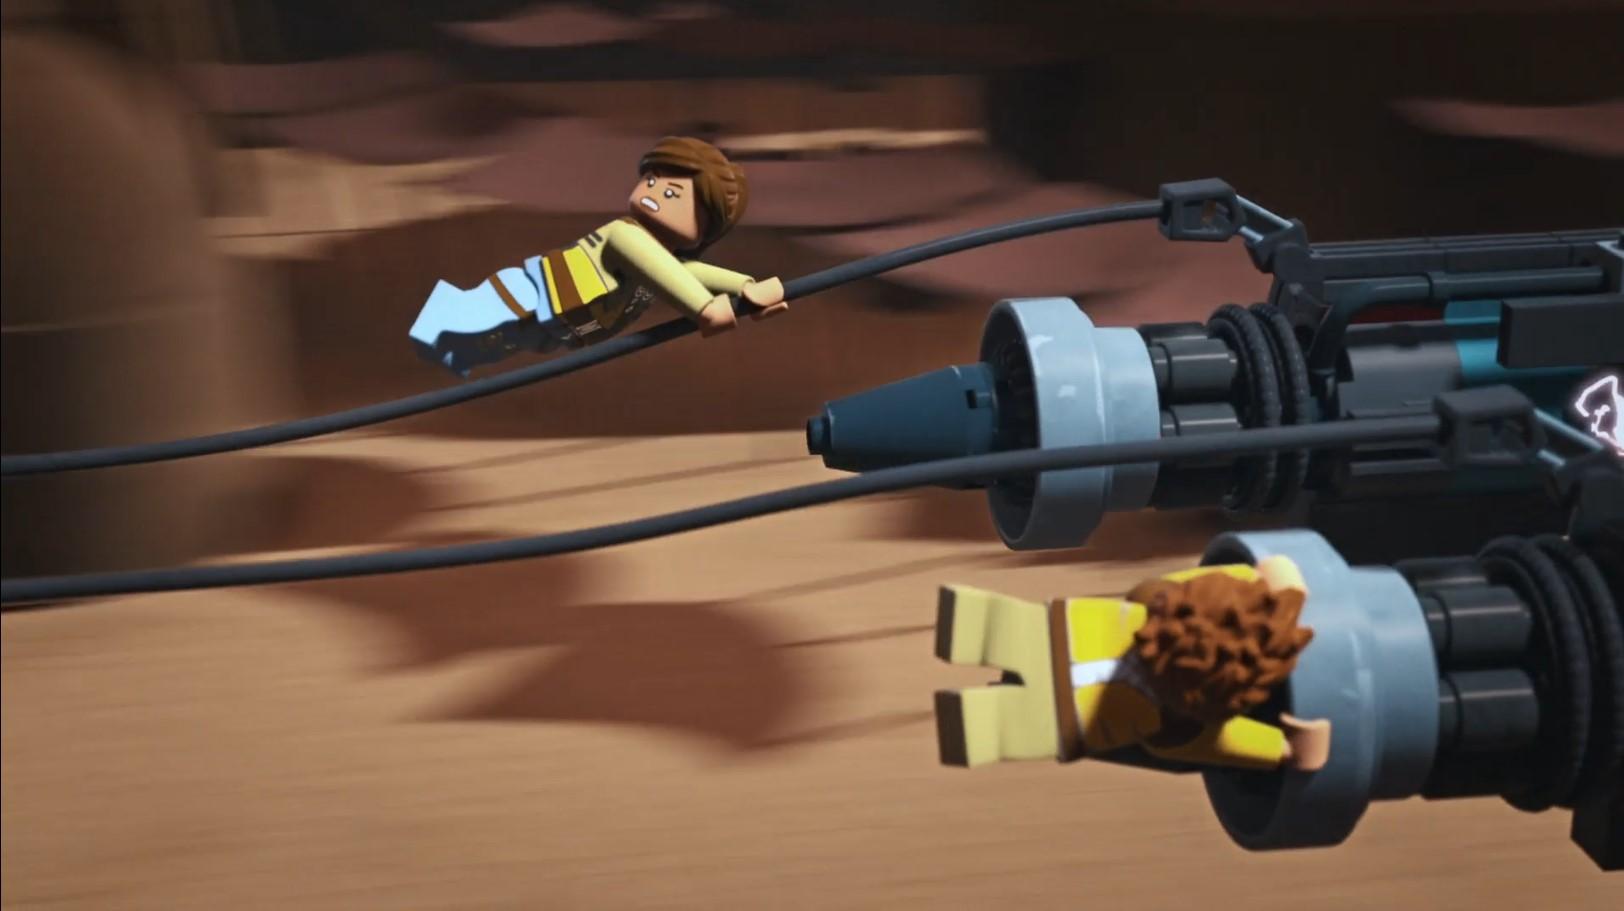 LEGO Звёздные войны: Приключения изобретателей